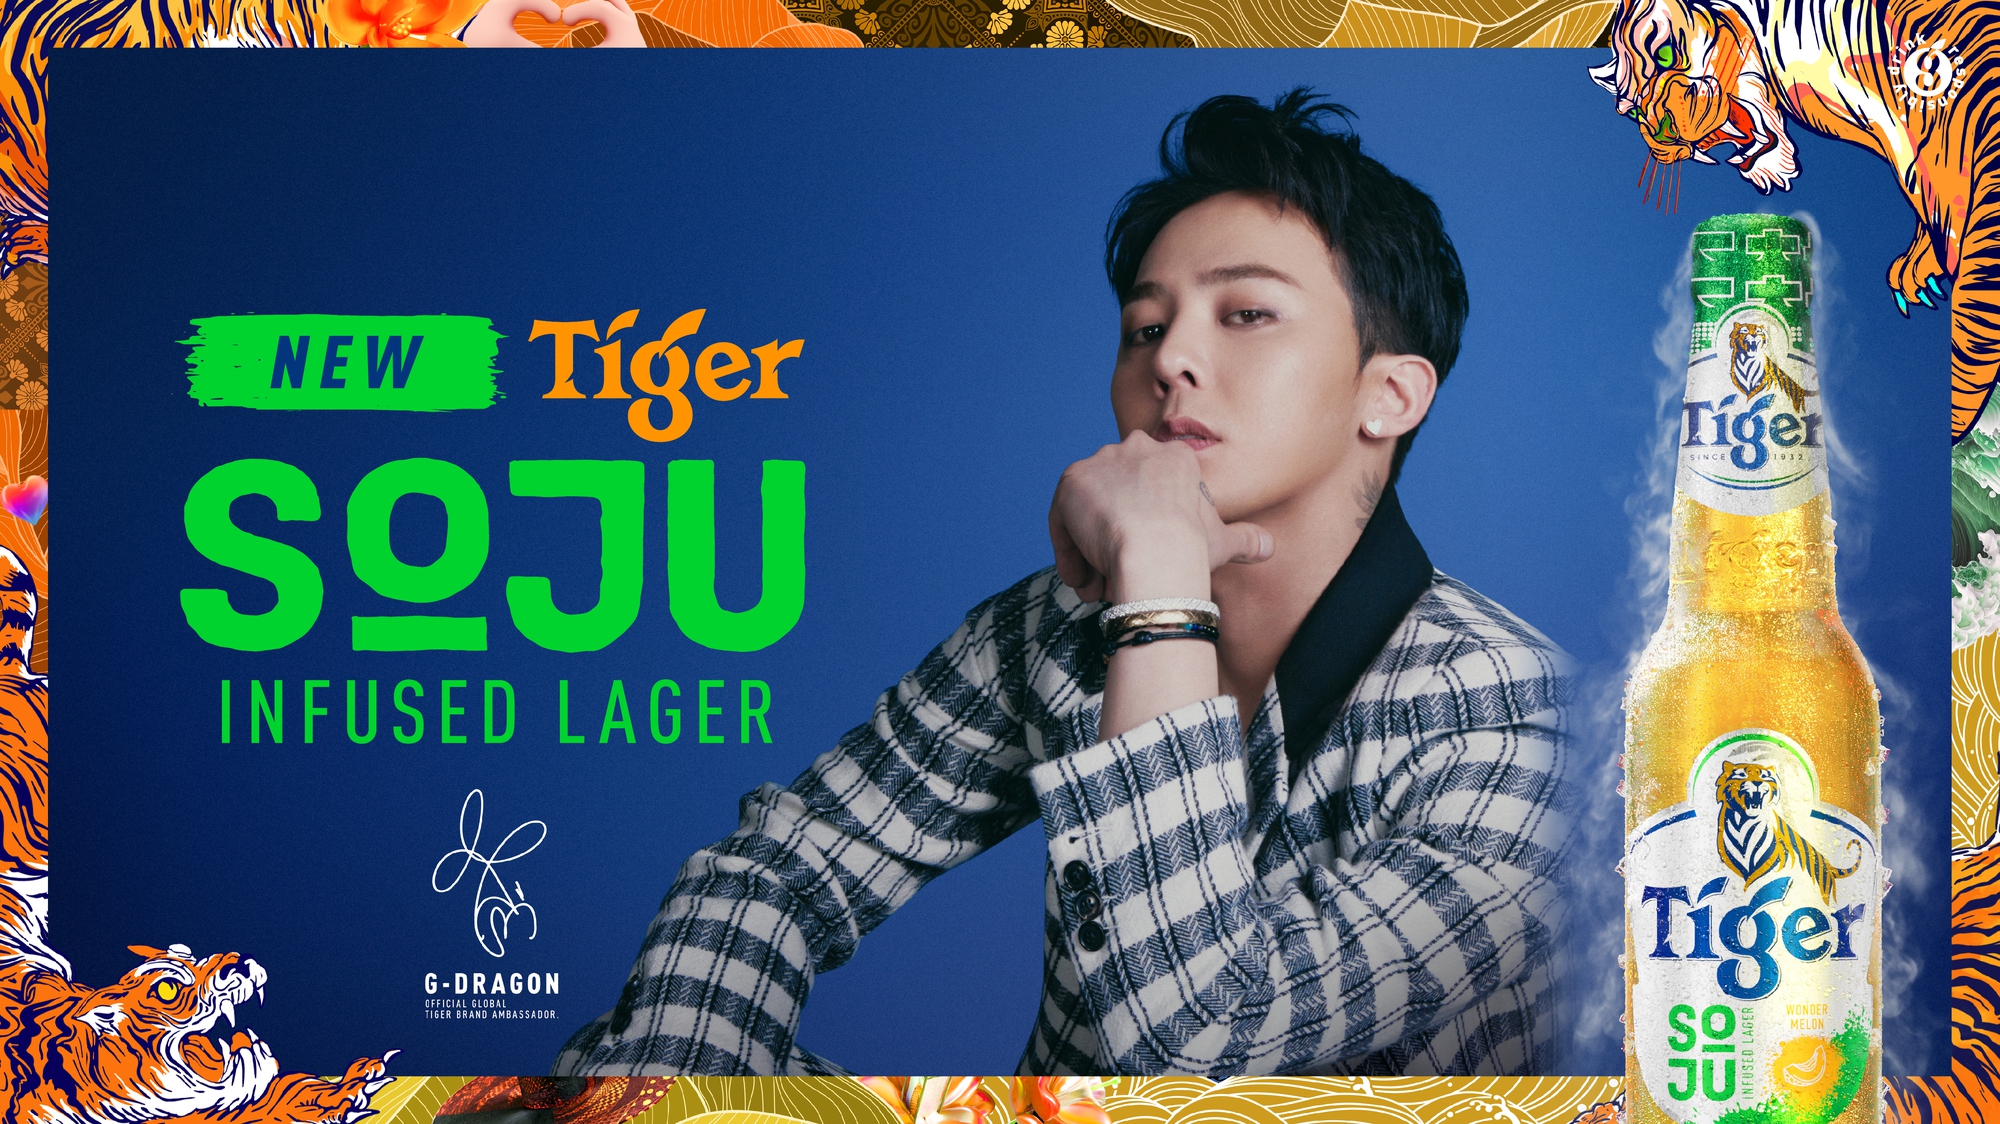 Tiger Beer ra mắt Tiger Soju Infused Lager với hương vị sảng khoái độc đáo